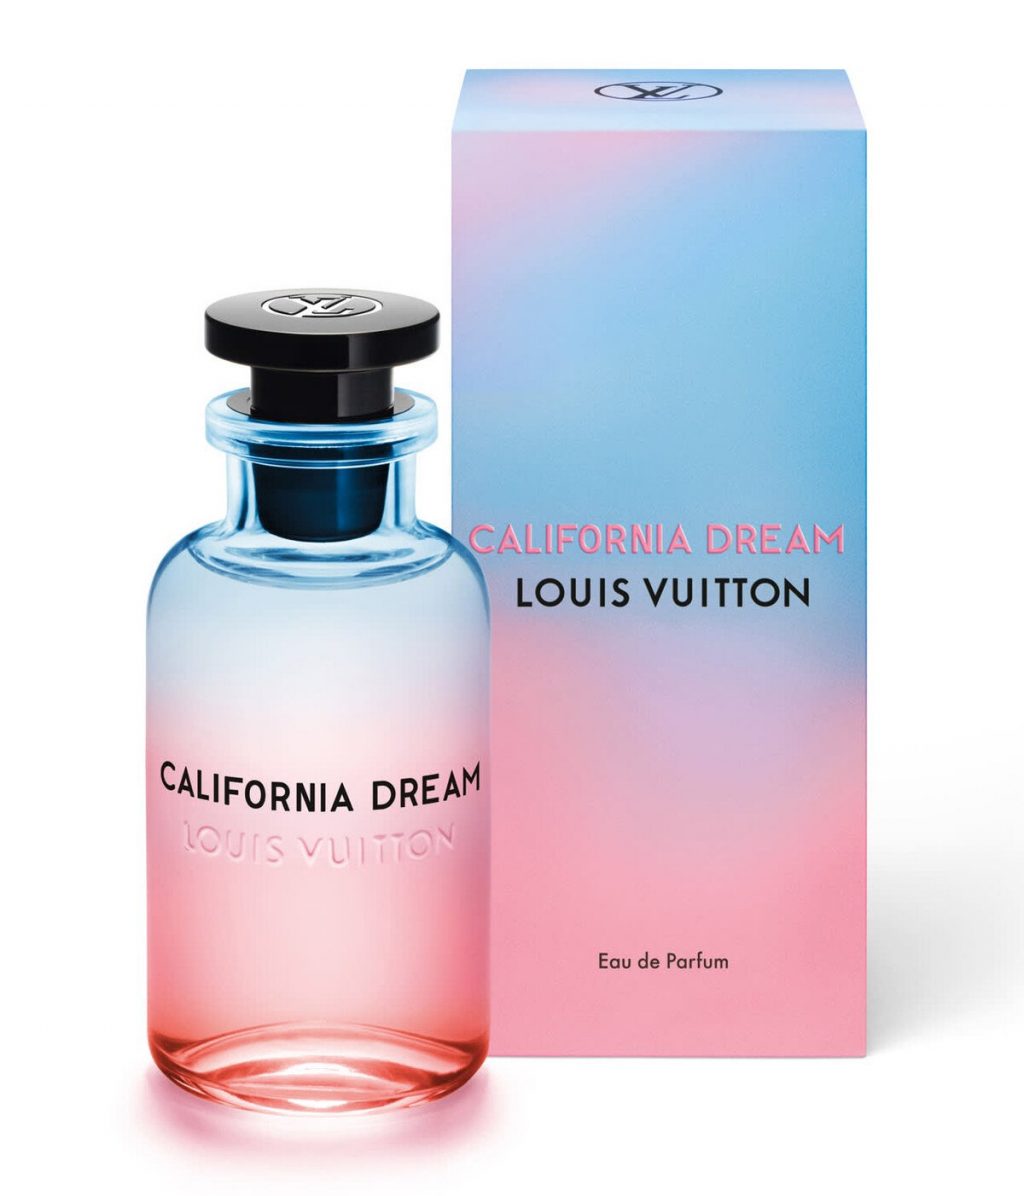 Louis Vuitton California Dream không chỉ sở hữu thiết kế tinh xảo mà mùi hương cũng rất đặc biệt và thu hút. Đây là sự lựa chọn phù hợp cho nàng vào thời điểm lễ hội và tiệc tùng cuối năm.